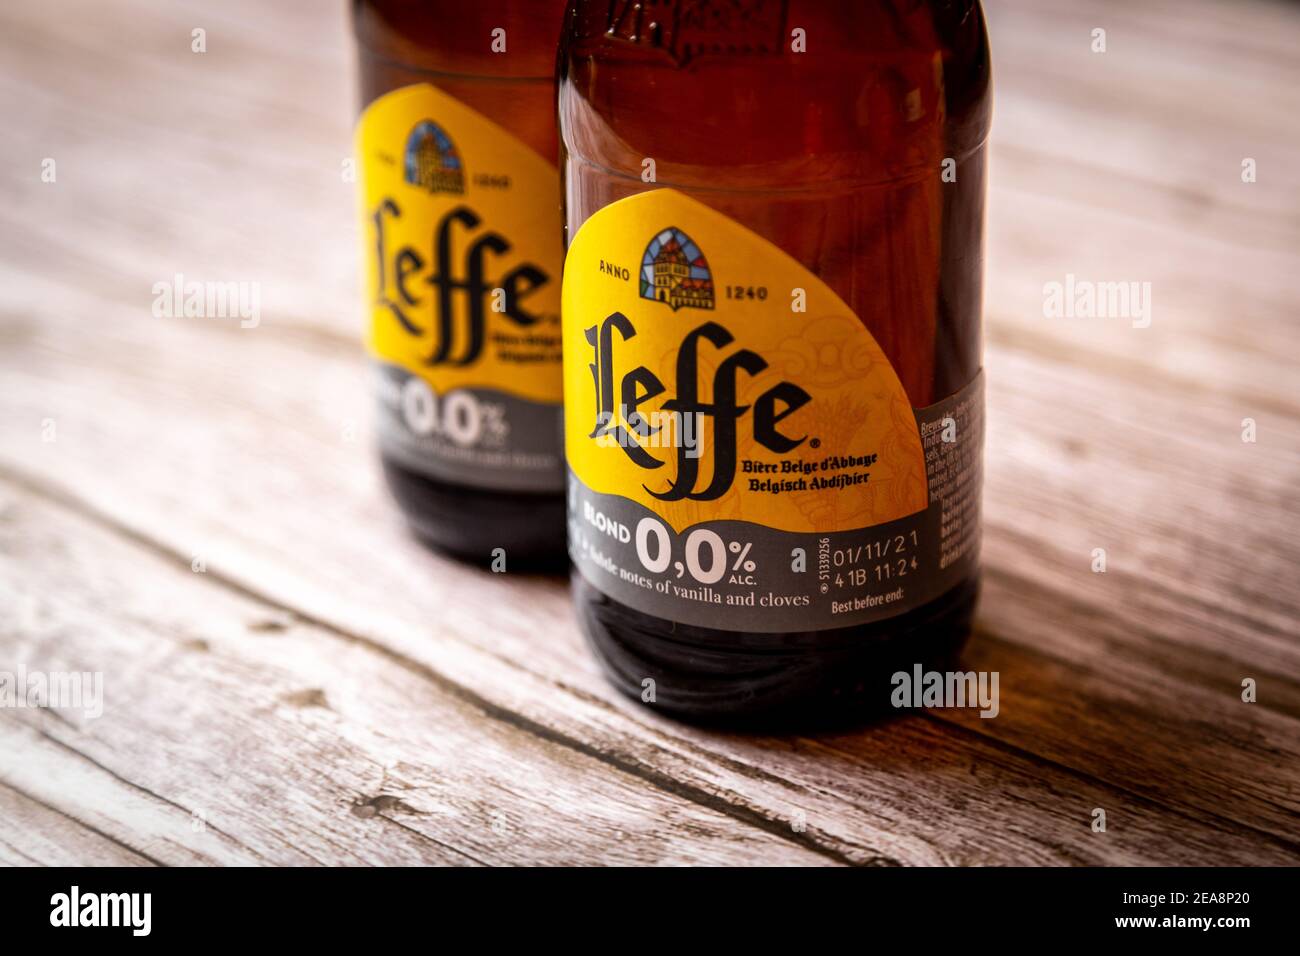 Bière Belge Leffe 0% : bière sans alcool au tarif pro